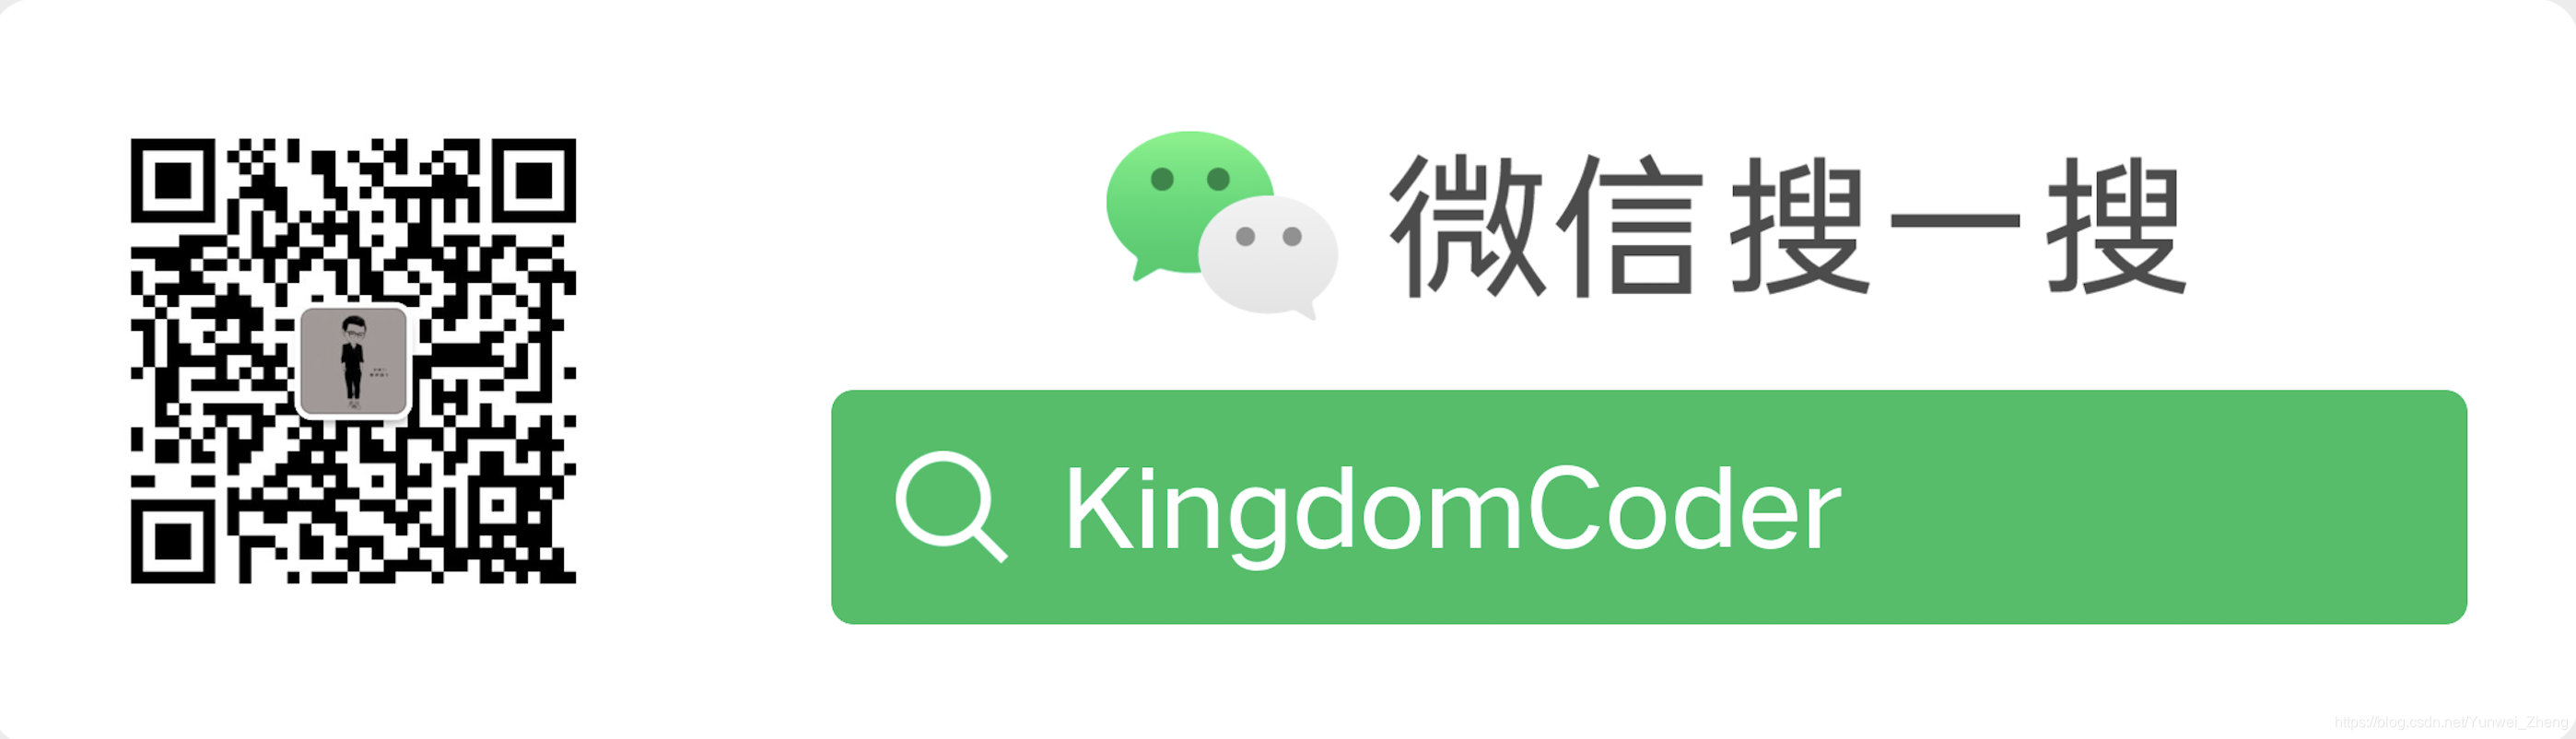 WeChatパブリックアカウント